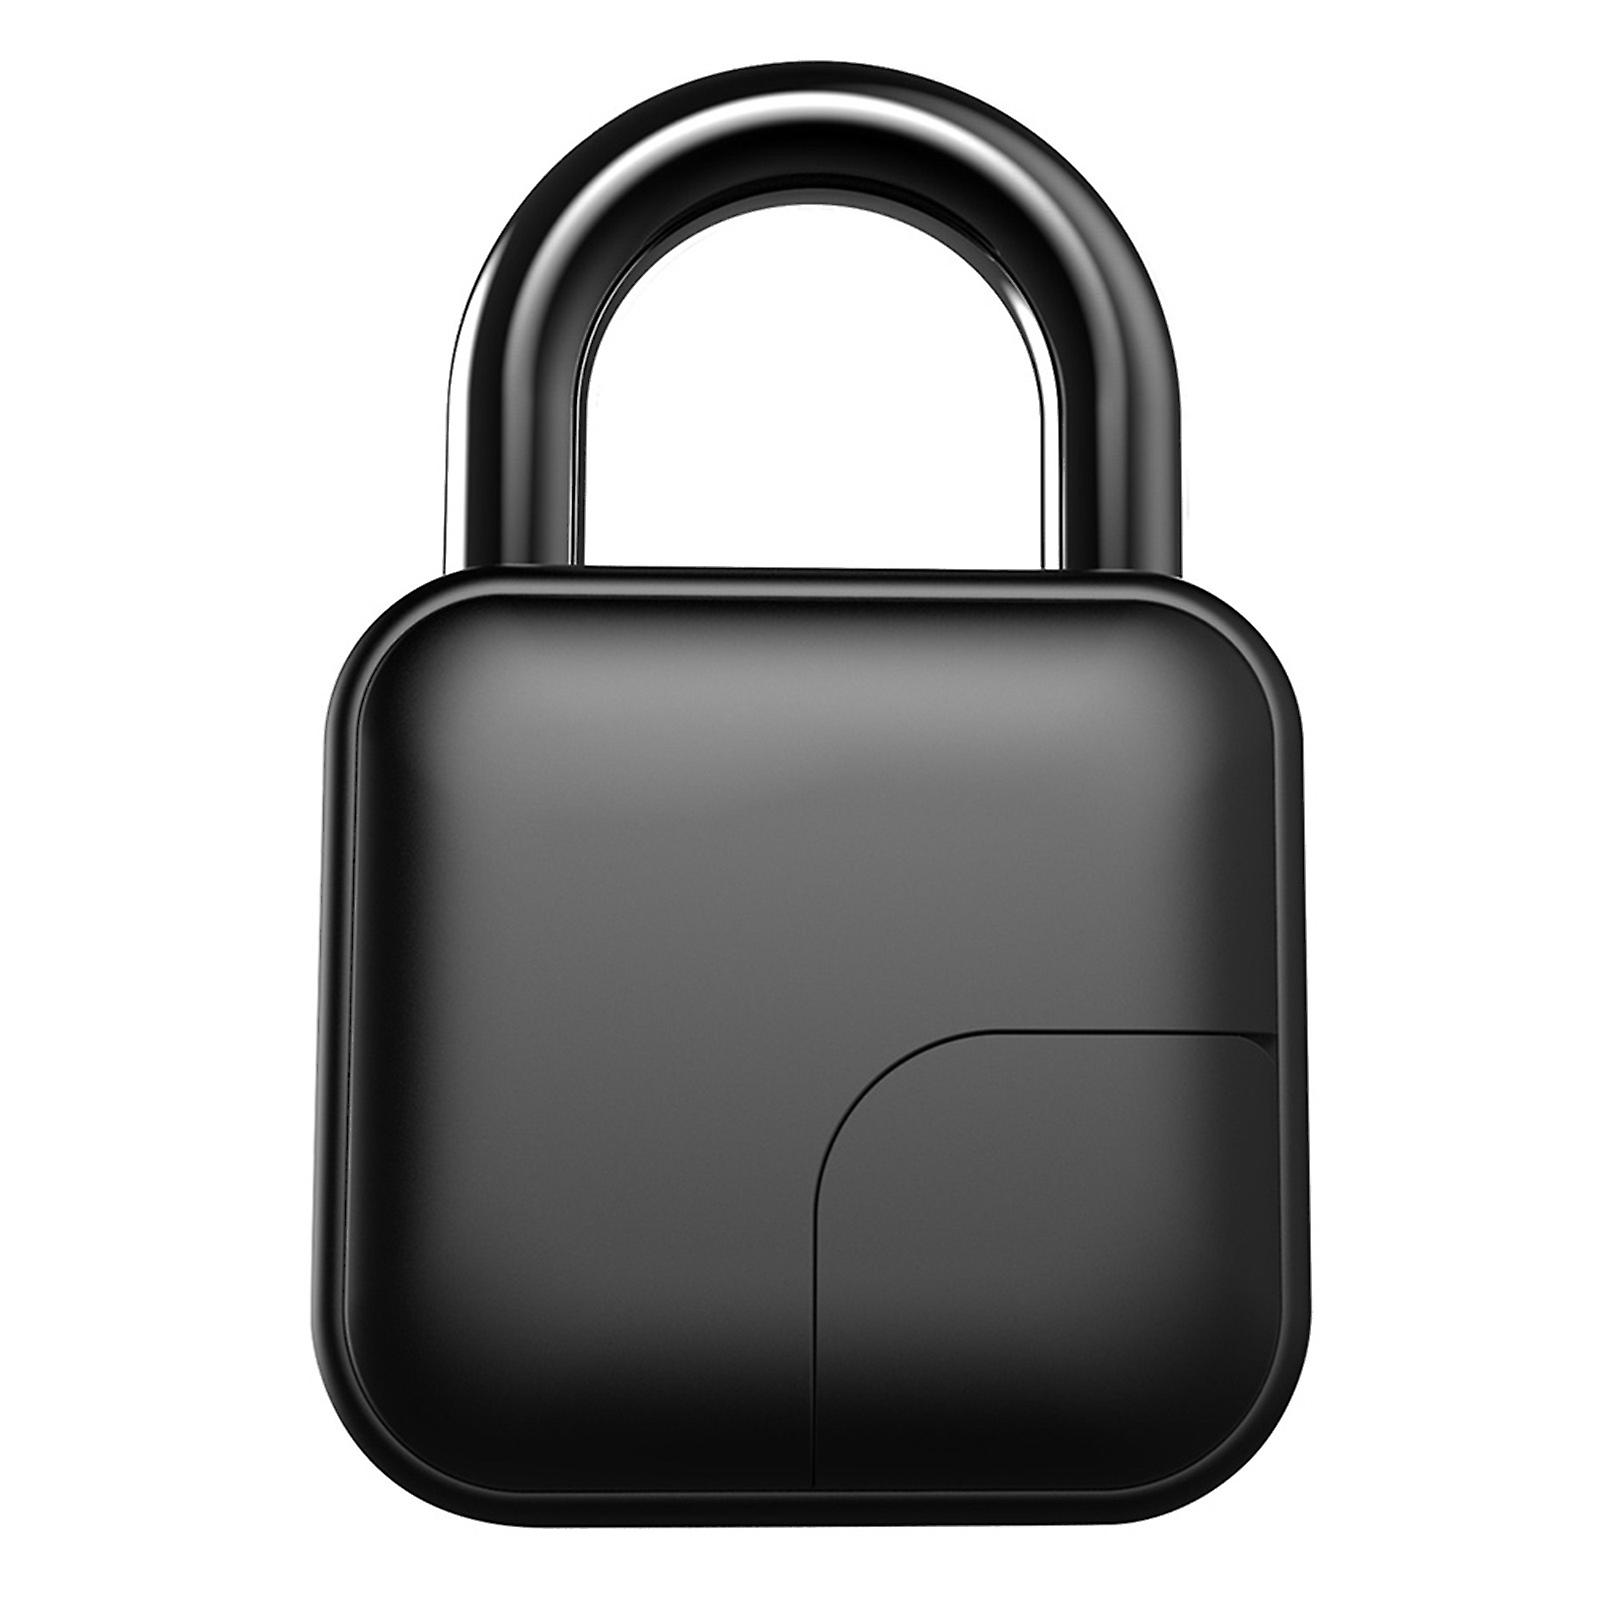 New Smart Fingerprint Padlock Anti Theft Waterproof Safety Dormitory Door Electronic Lock